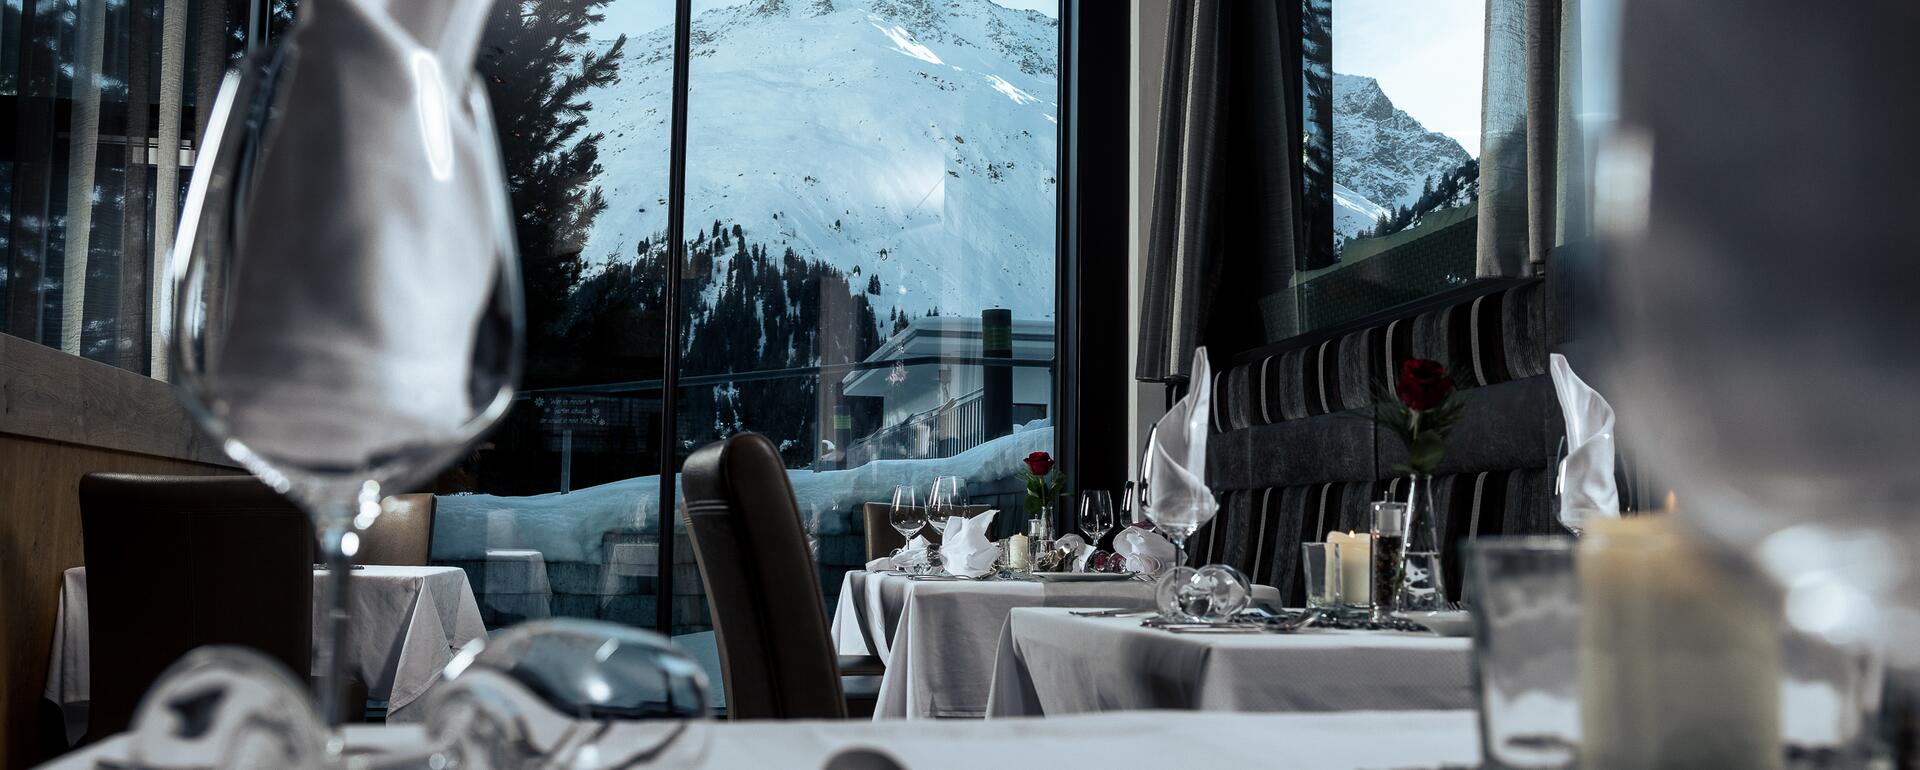 restaurant Pitztal valley in winter